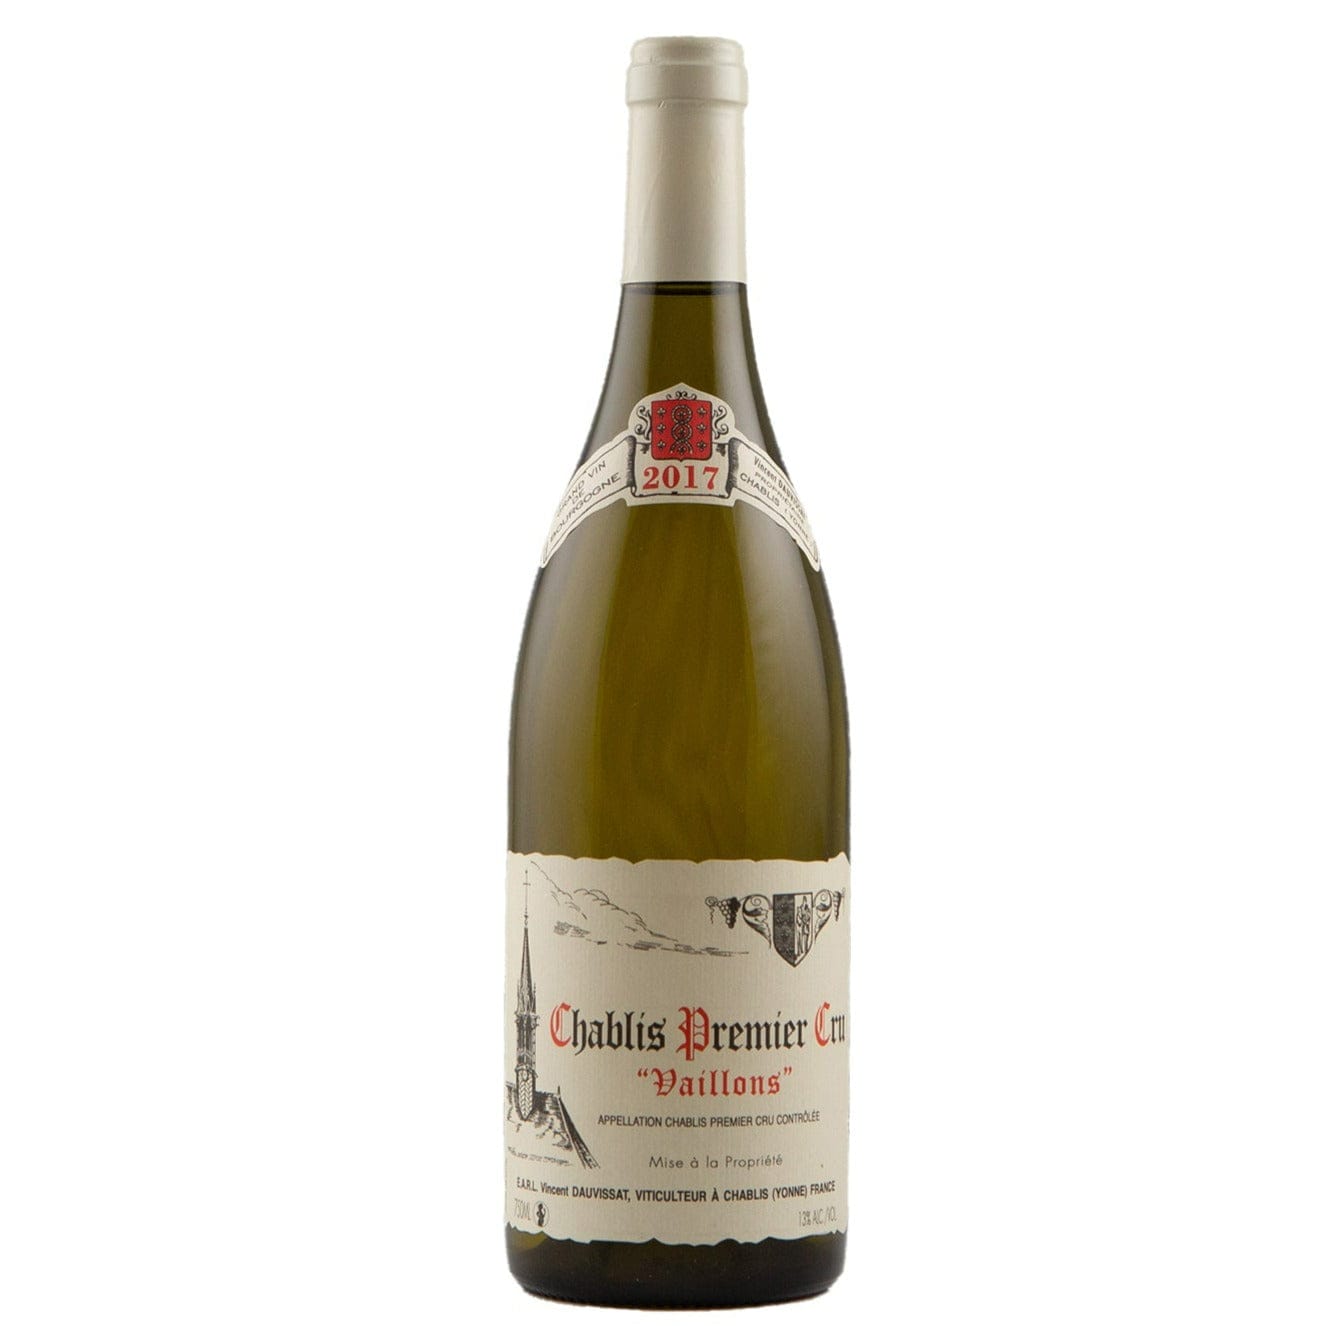 Single bottle of White wine Vincent Dauvissat, Vaillon Premier Cru, Chablis, 2017 100% Chardonnay